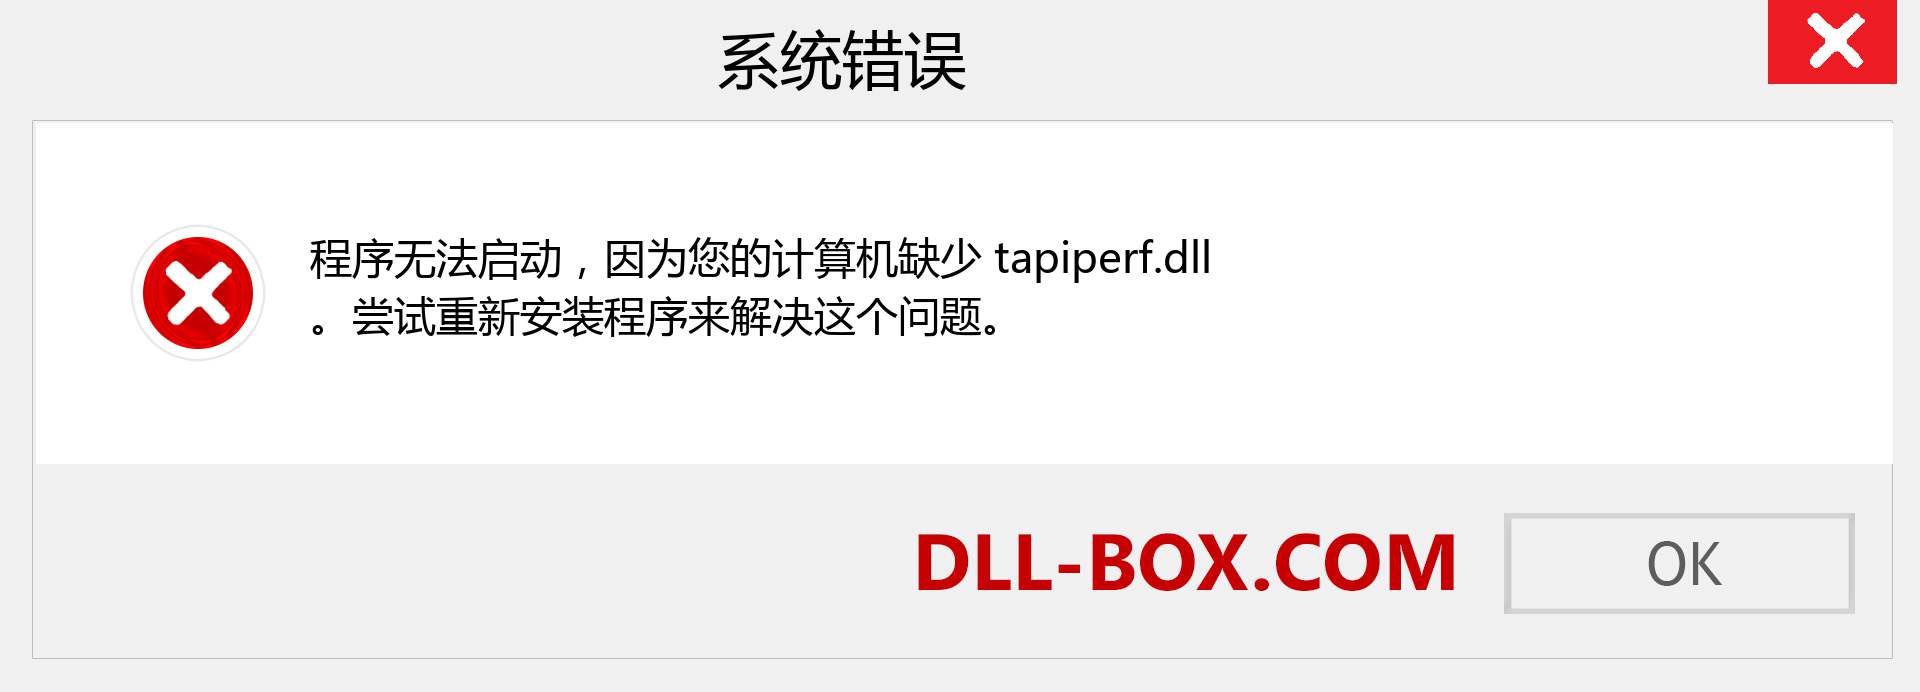 tapiperf.dll 文件丢失？。 适用于 Windows 7、8、10 的下载 - 修复 Windows、照片、图像上的 tapiperf dll 丢失错误